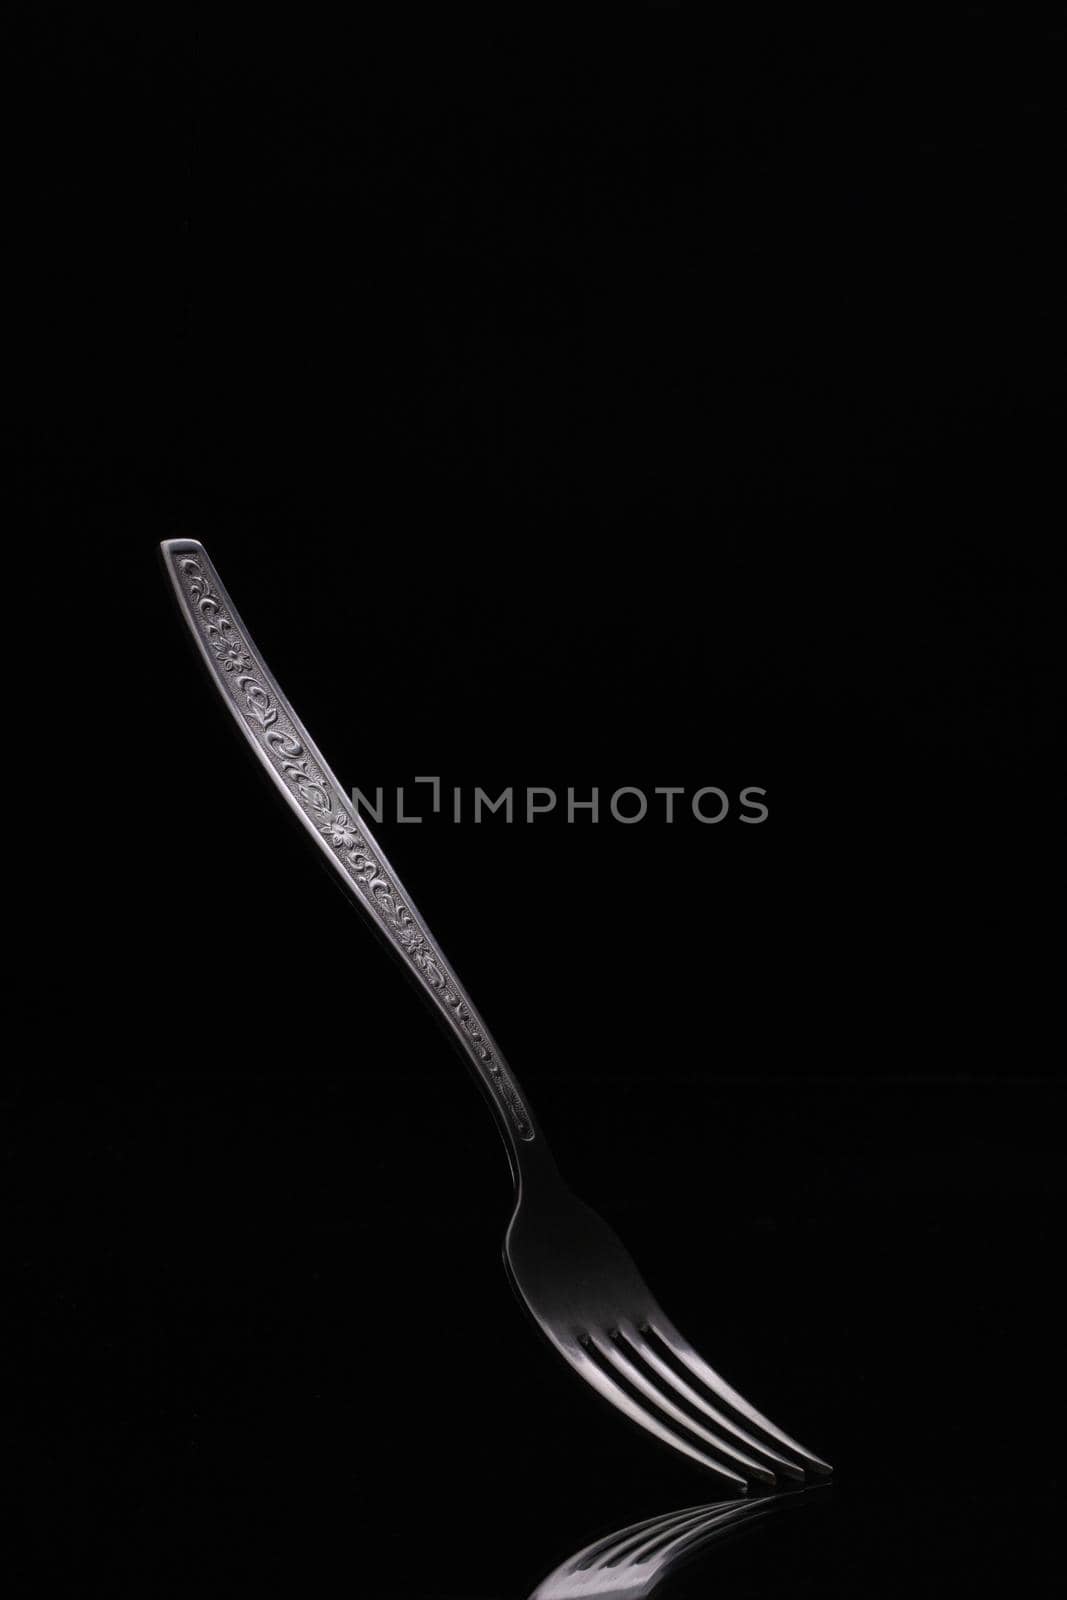 Old steel fork on black background. Metal fork on dark background close up.